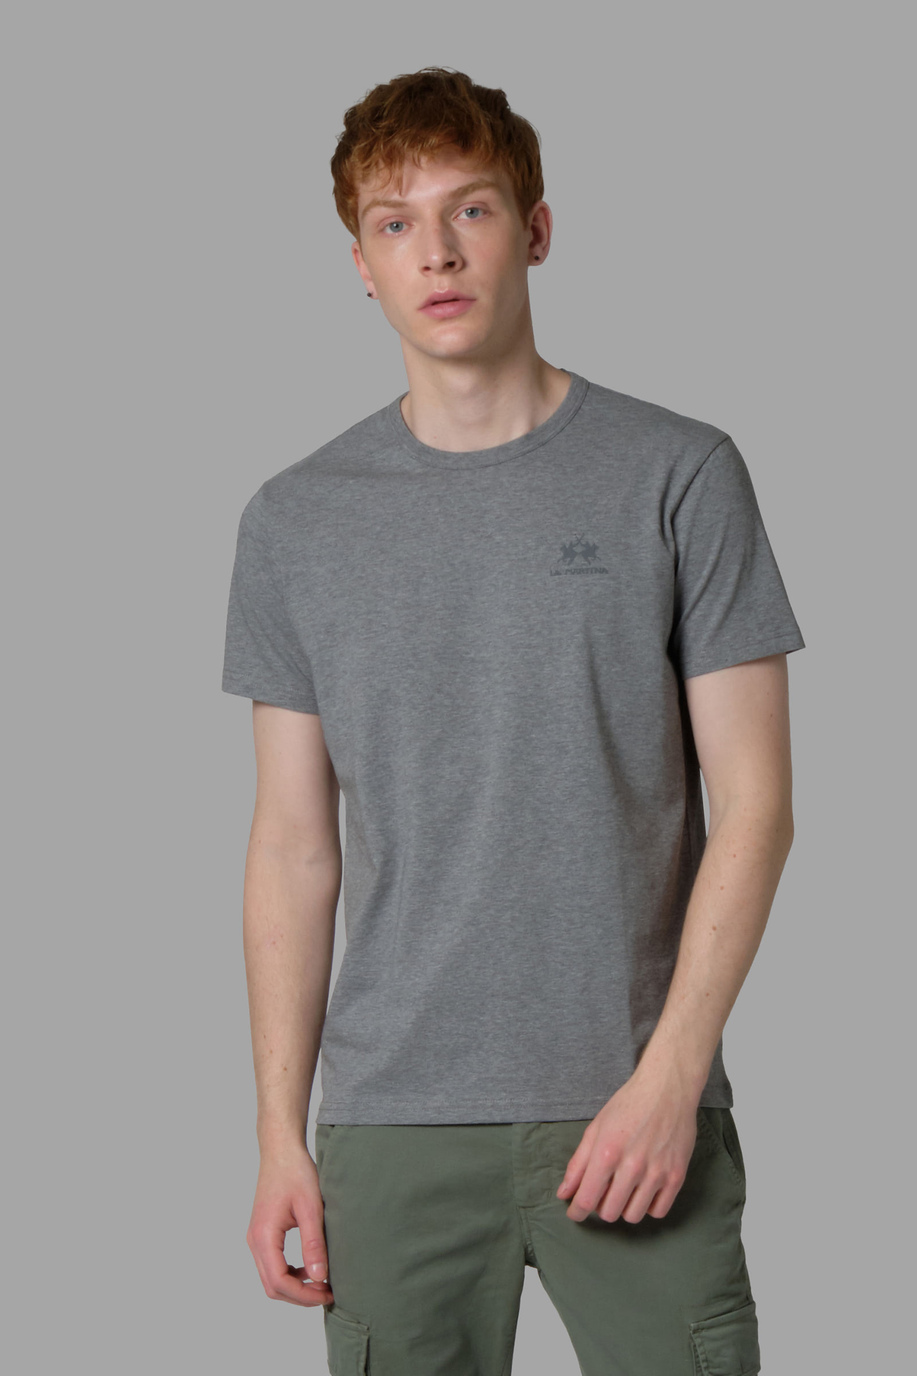 Men's regular-fit T-Shirt - T-Shirts | La Martina - Official Online Shop